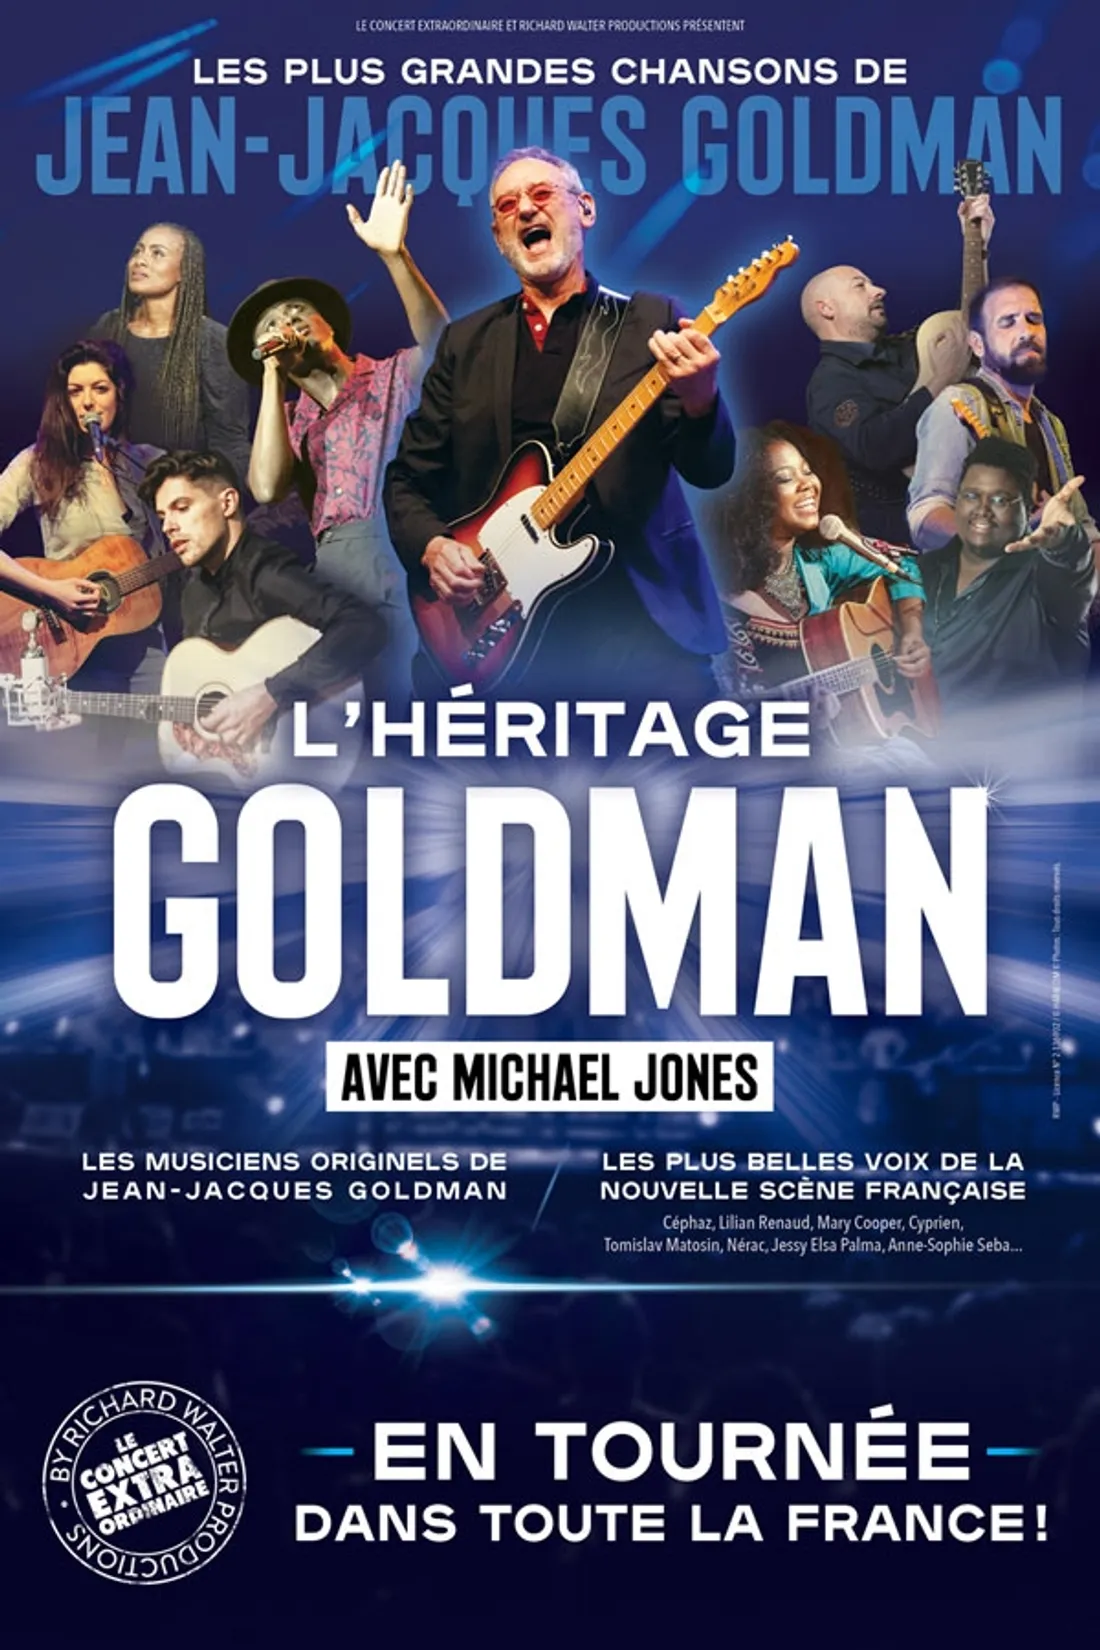 L’Héritage Goldman au Zénith de St-Etienne !